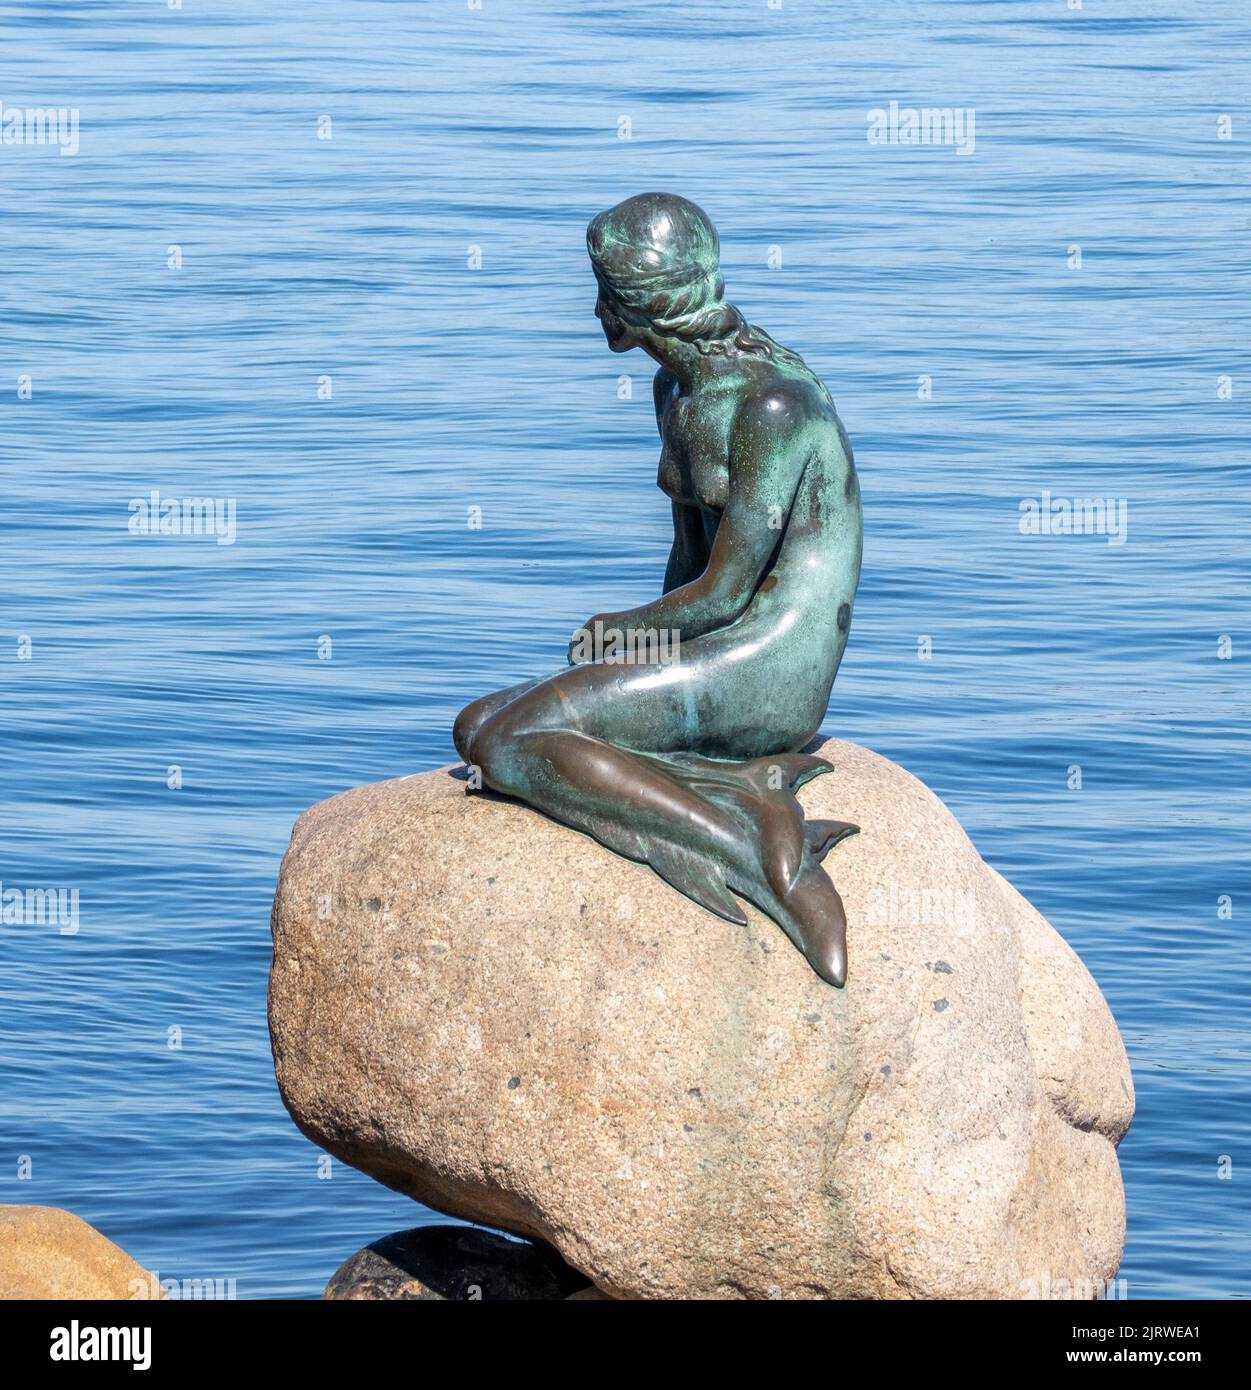 Escultura en bronce de la Sirenita de Edvard Eriksen en el paseo de Langelinie junto al puerto de Copenhague, Dinamarca Foto de stock